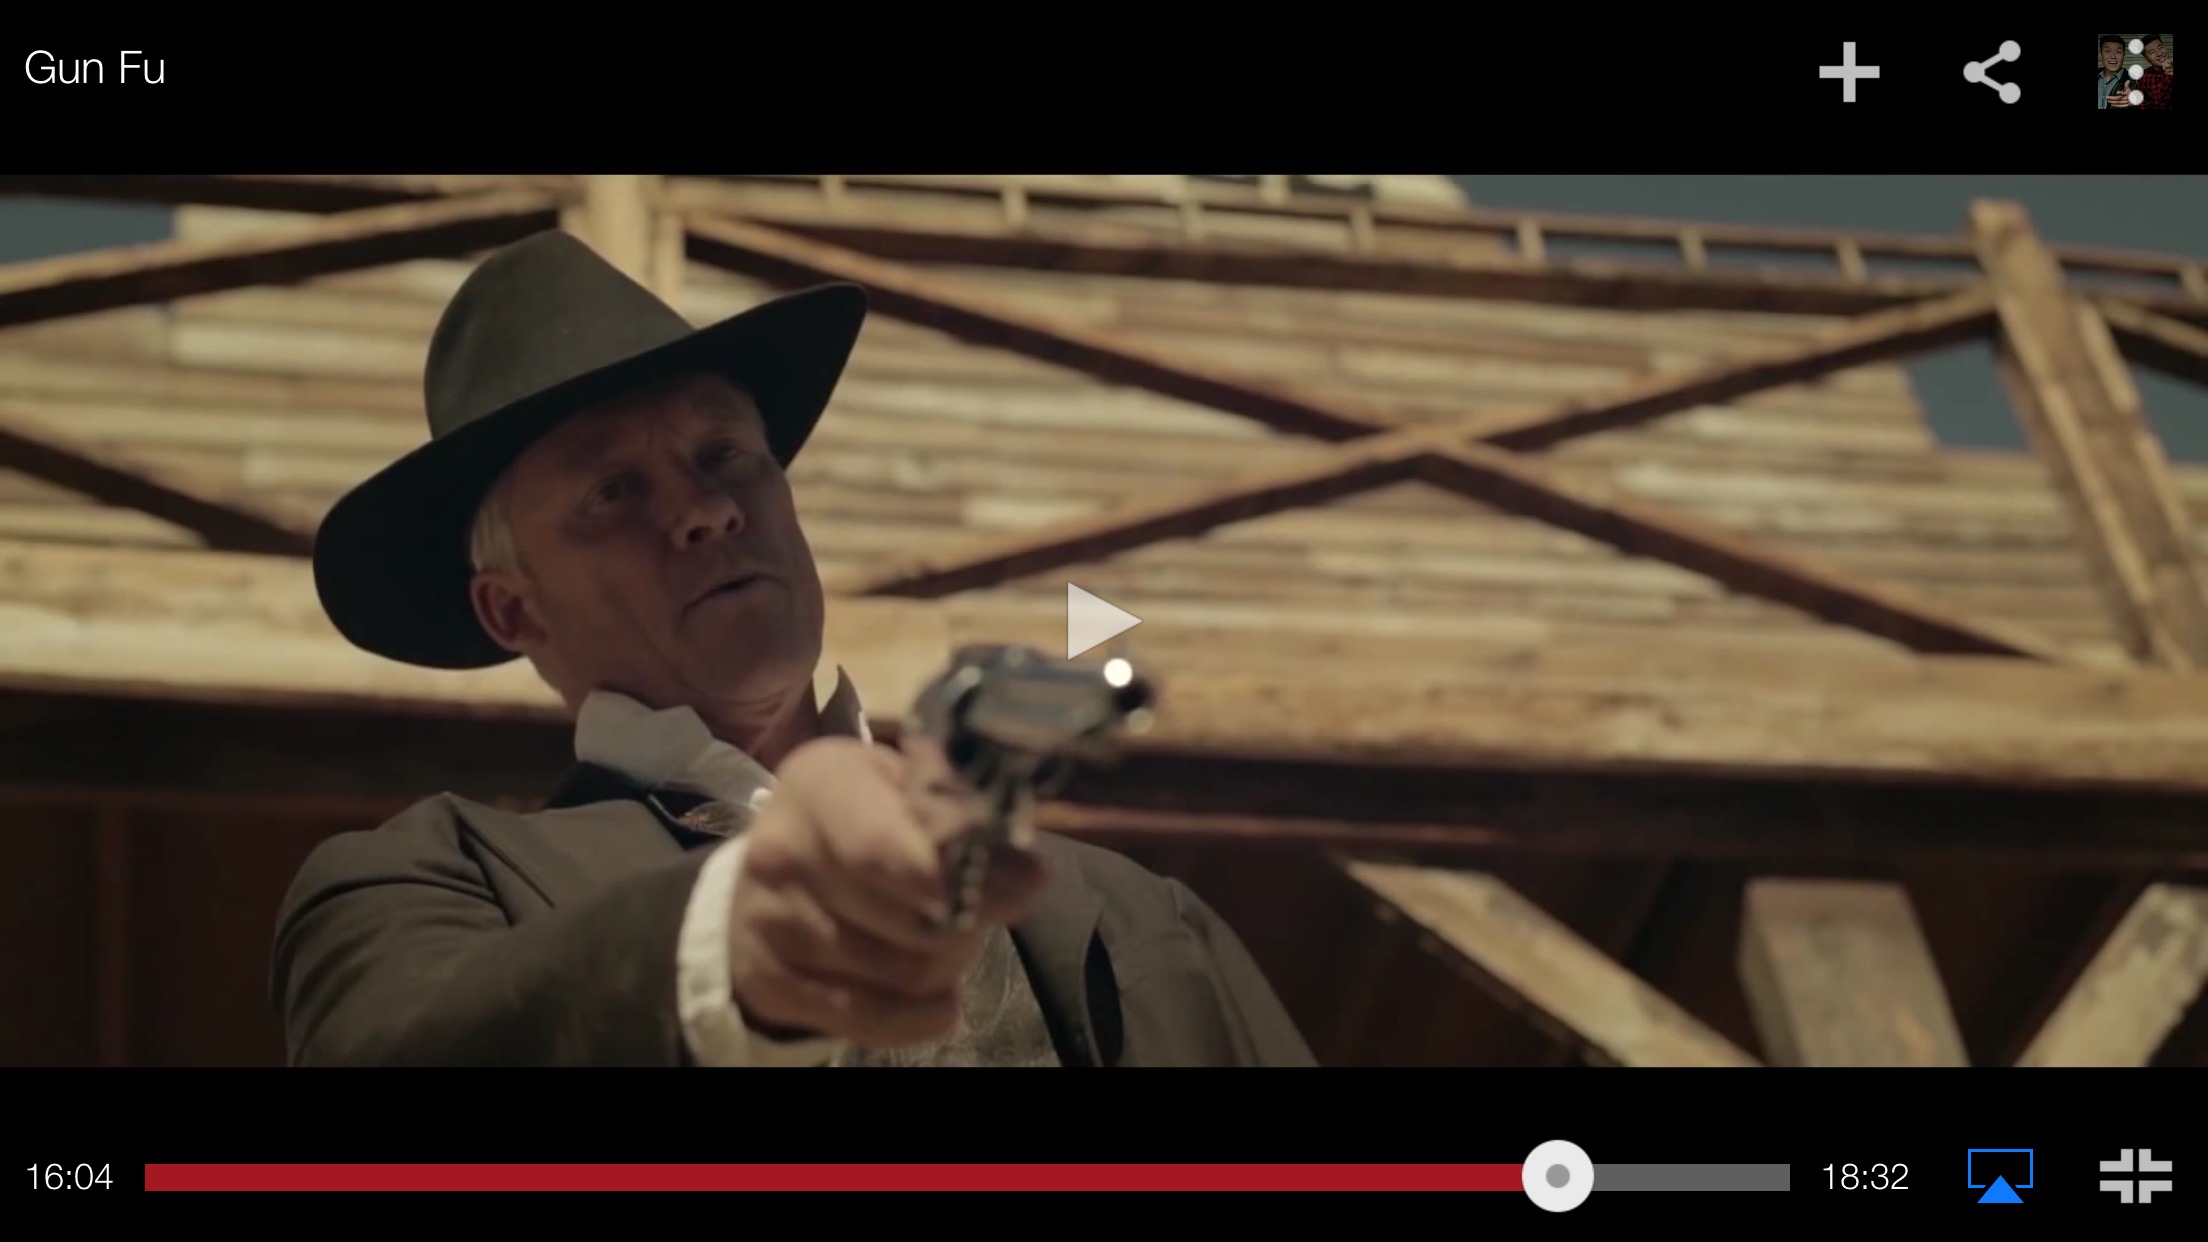 Butch Cassidy in Gun Fu.